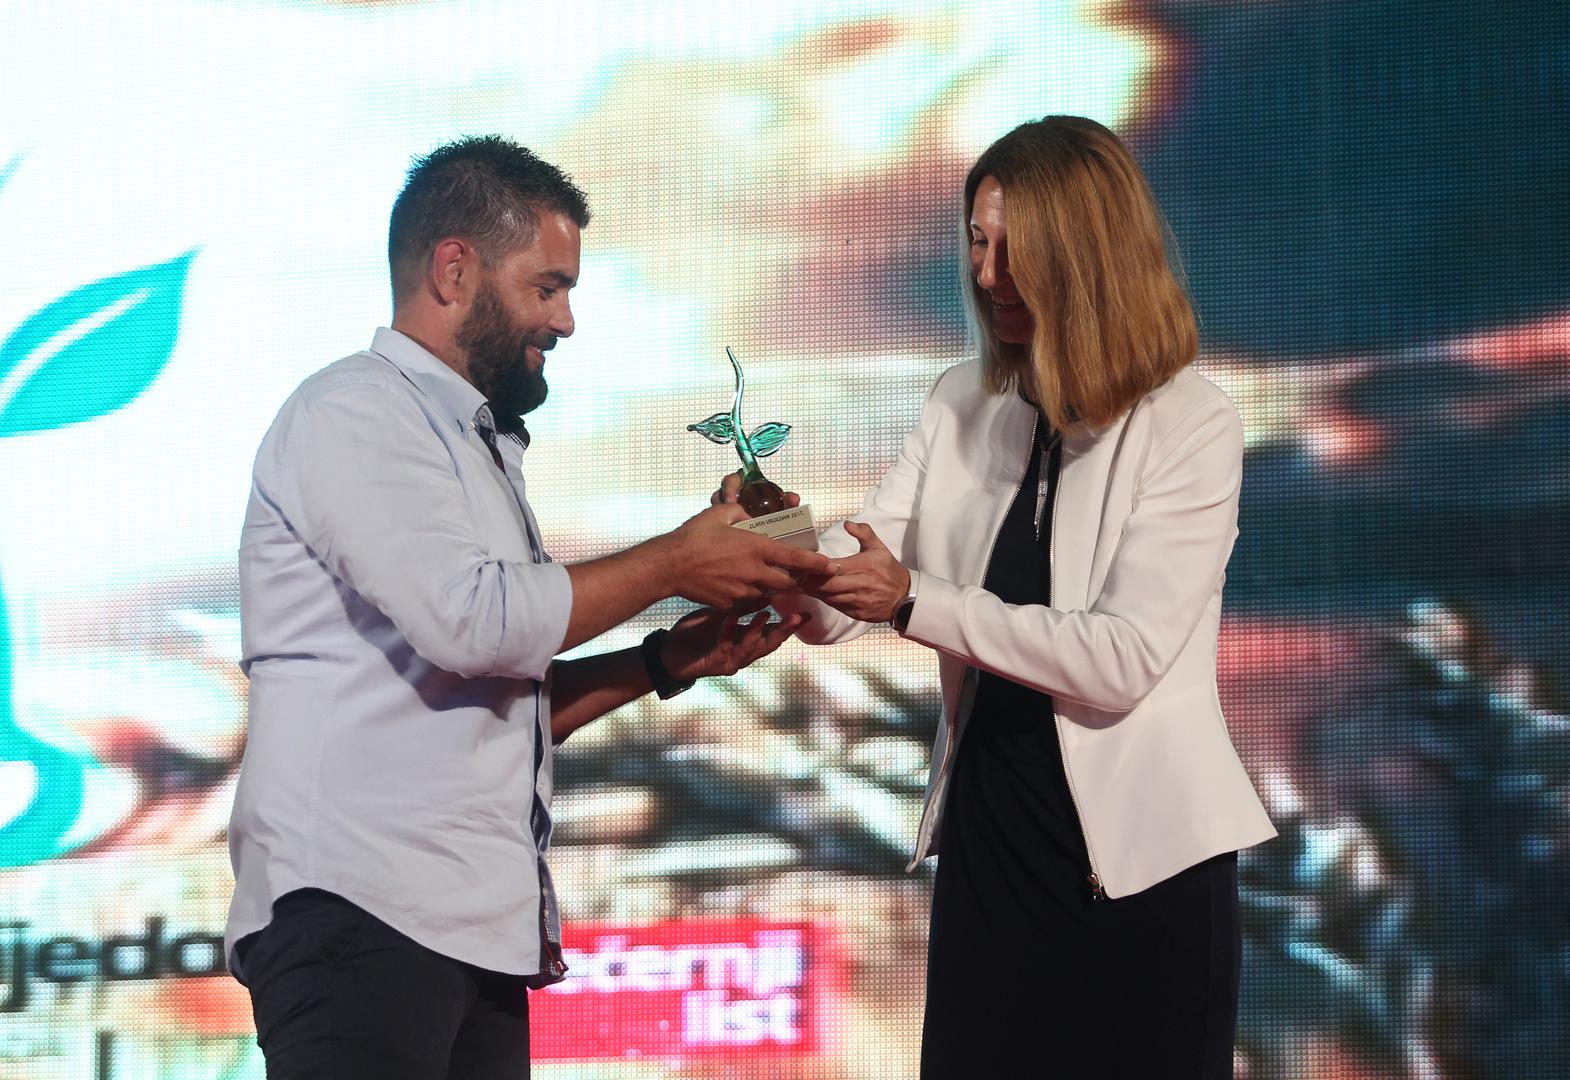 Vinar i maslinar Radoslav Županović iz Kruševa u primoštenskom zaleđu osvojio je treću nagradu – 10.000 kuna. Uručila mu ju je Tamara Perko iz HBOR-a